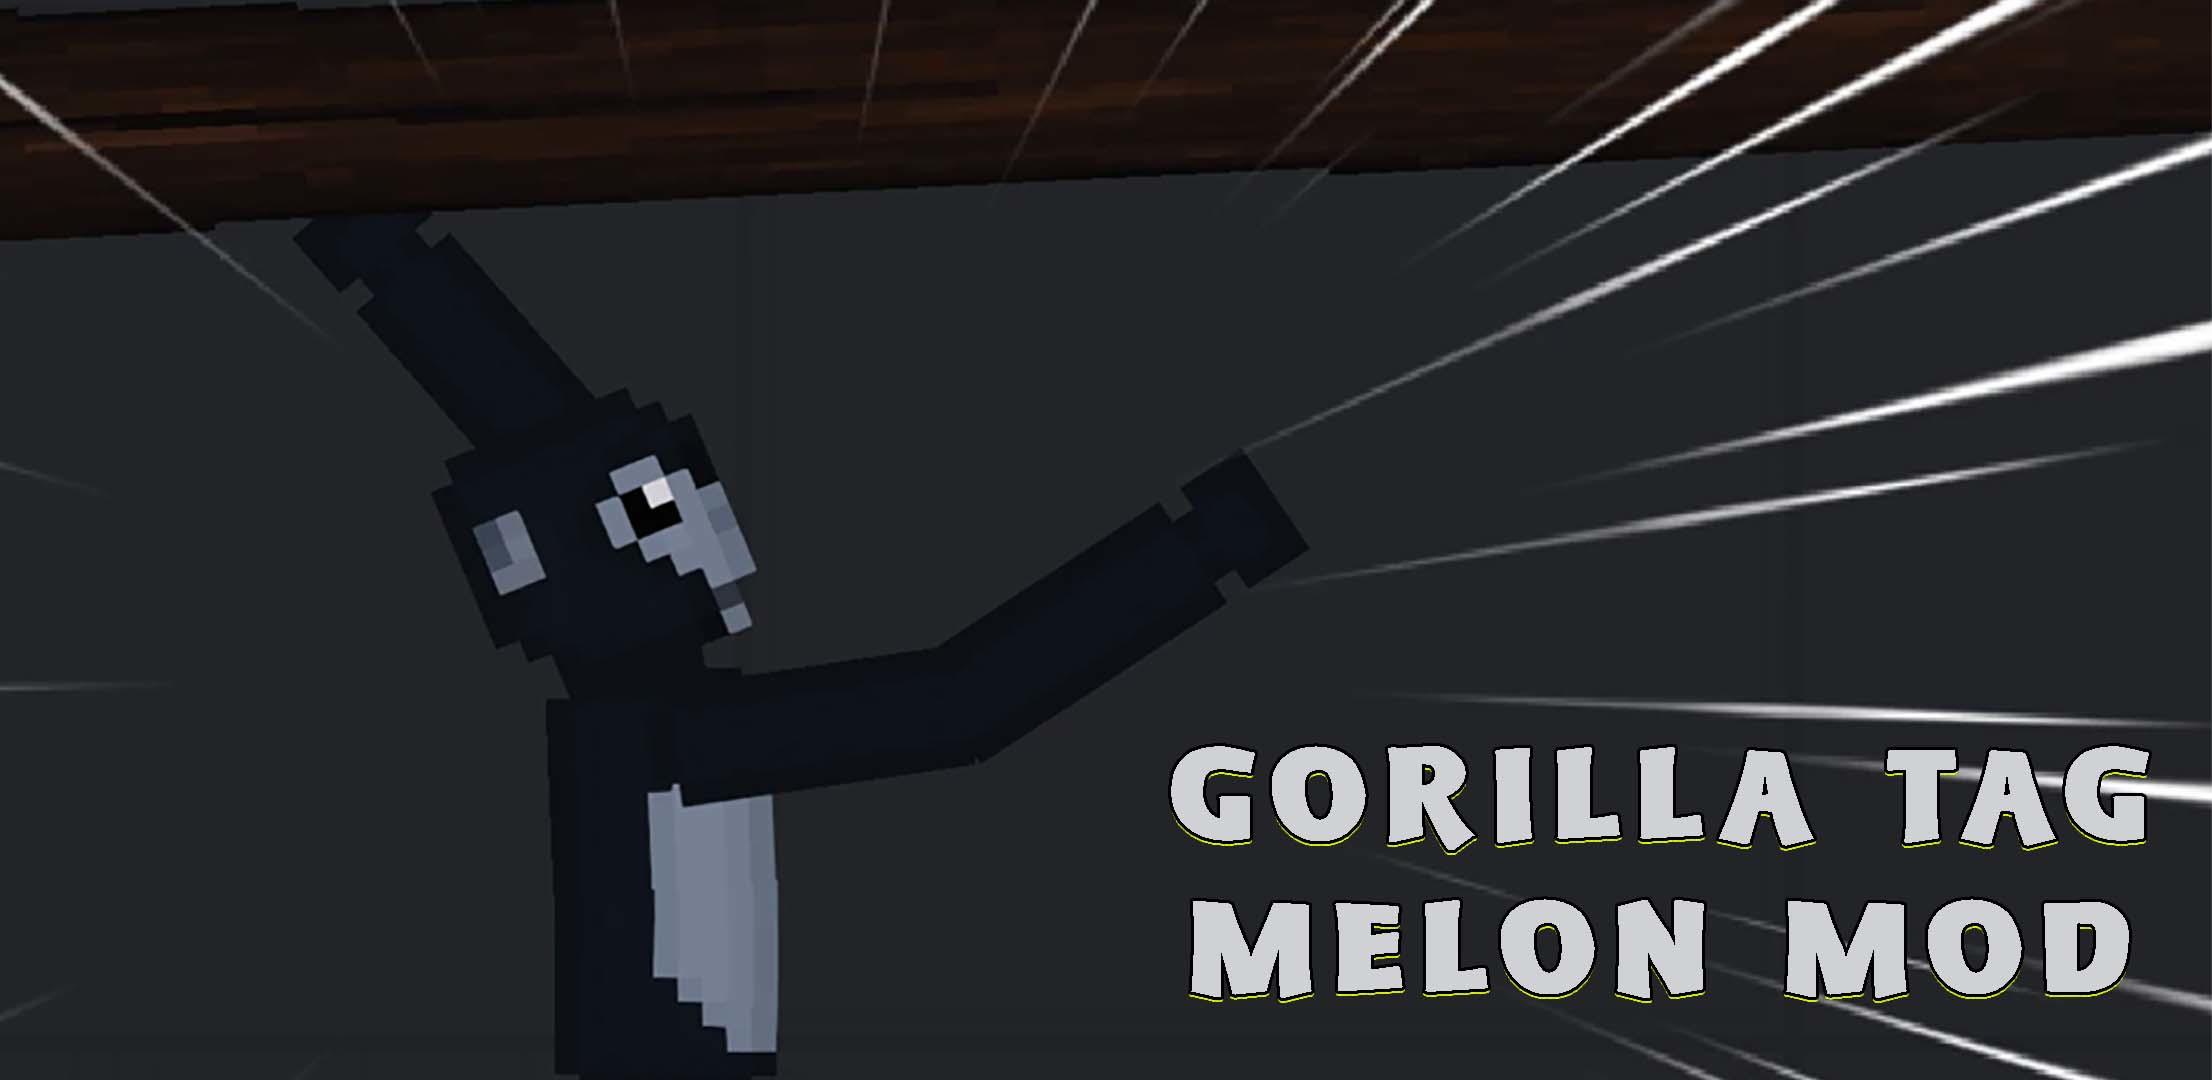 Gorilla Tag In Minecraft Minecraft Mod